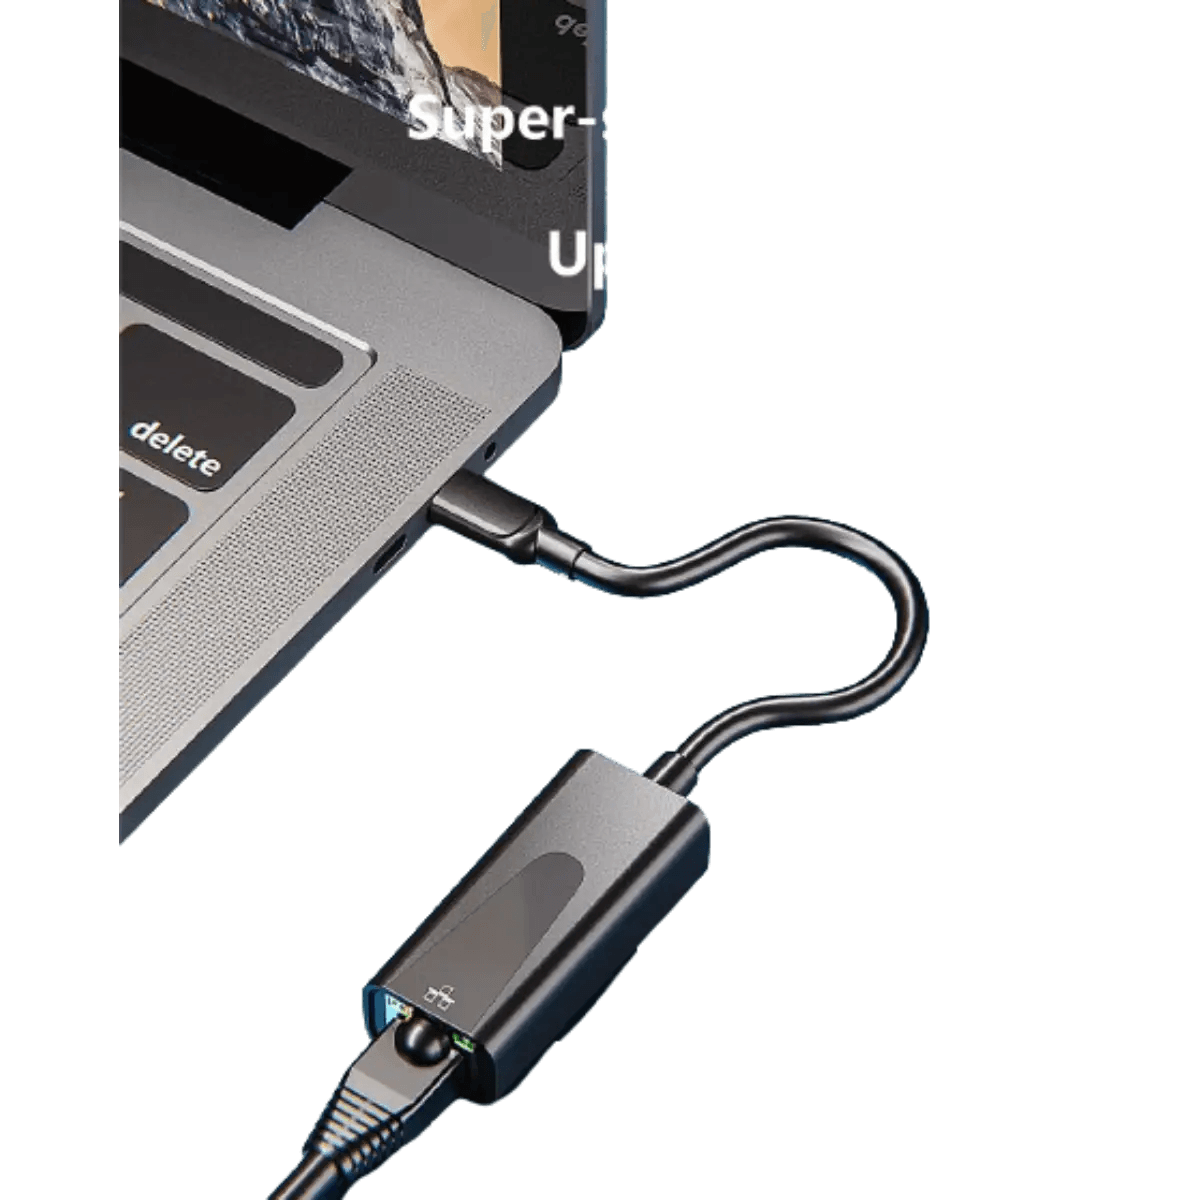 Adaptateur USB-C Ethernet 1000 à RJ45 LAN